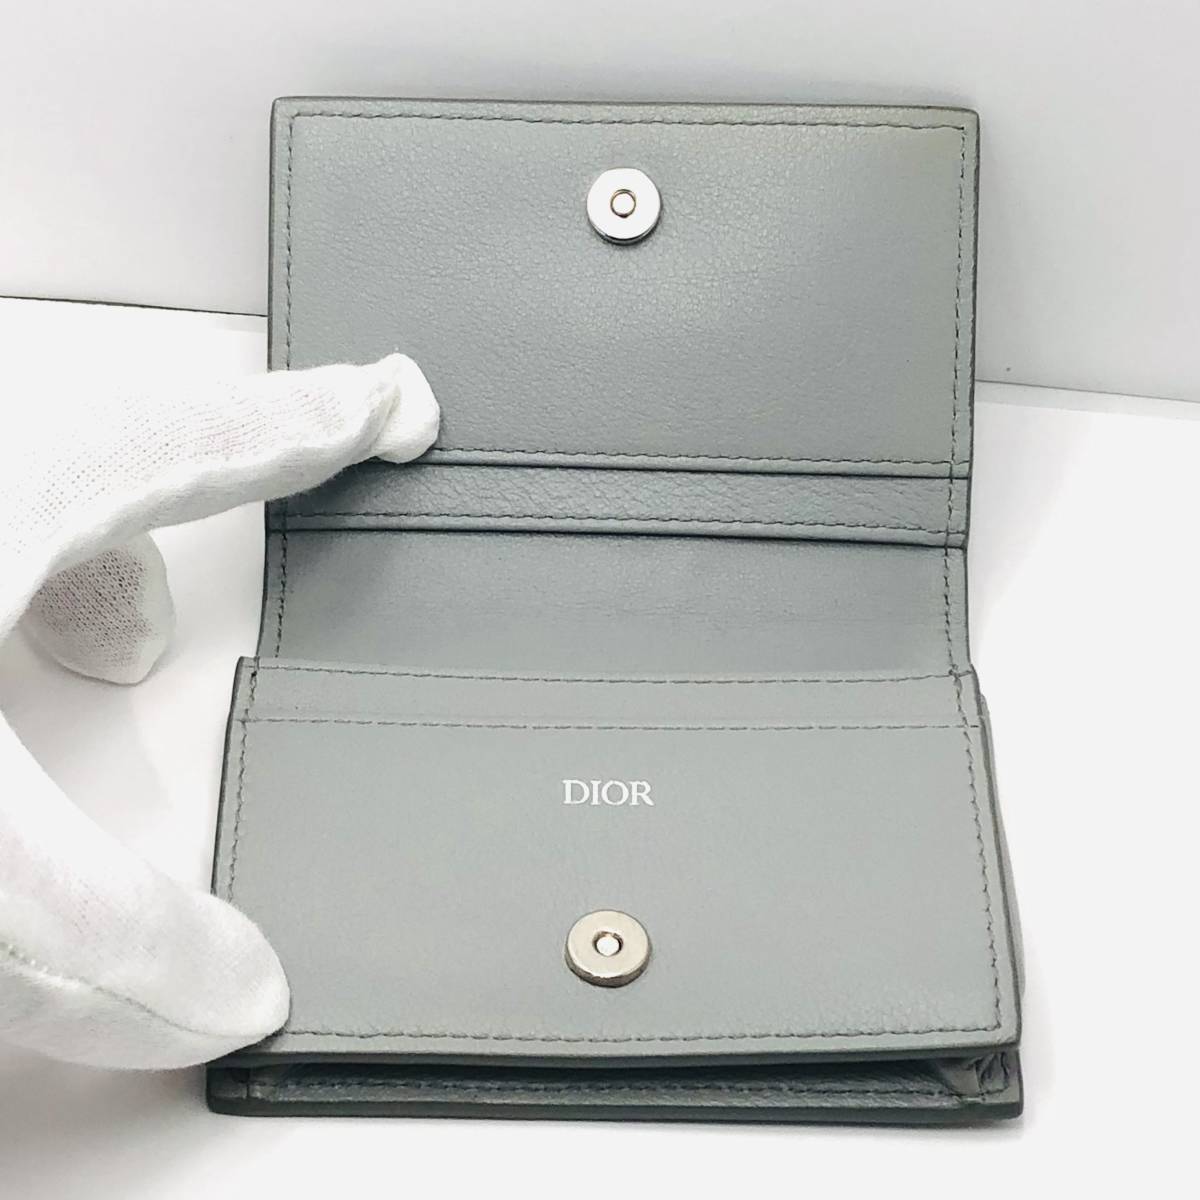 Dior ディオール カードケース 名刺入れ ビジネス カードホルダー レザー メンズ レディース 男女兼用_画像7